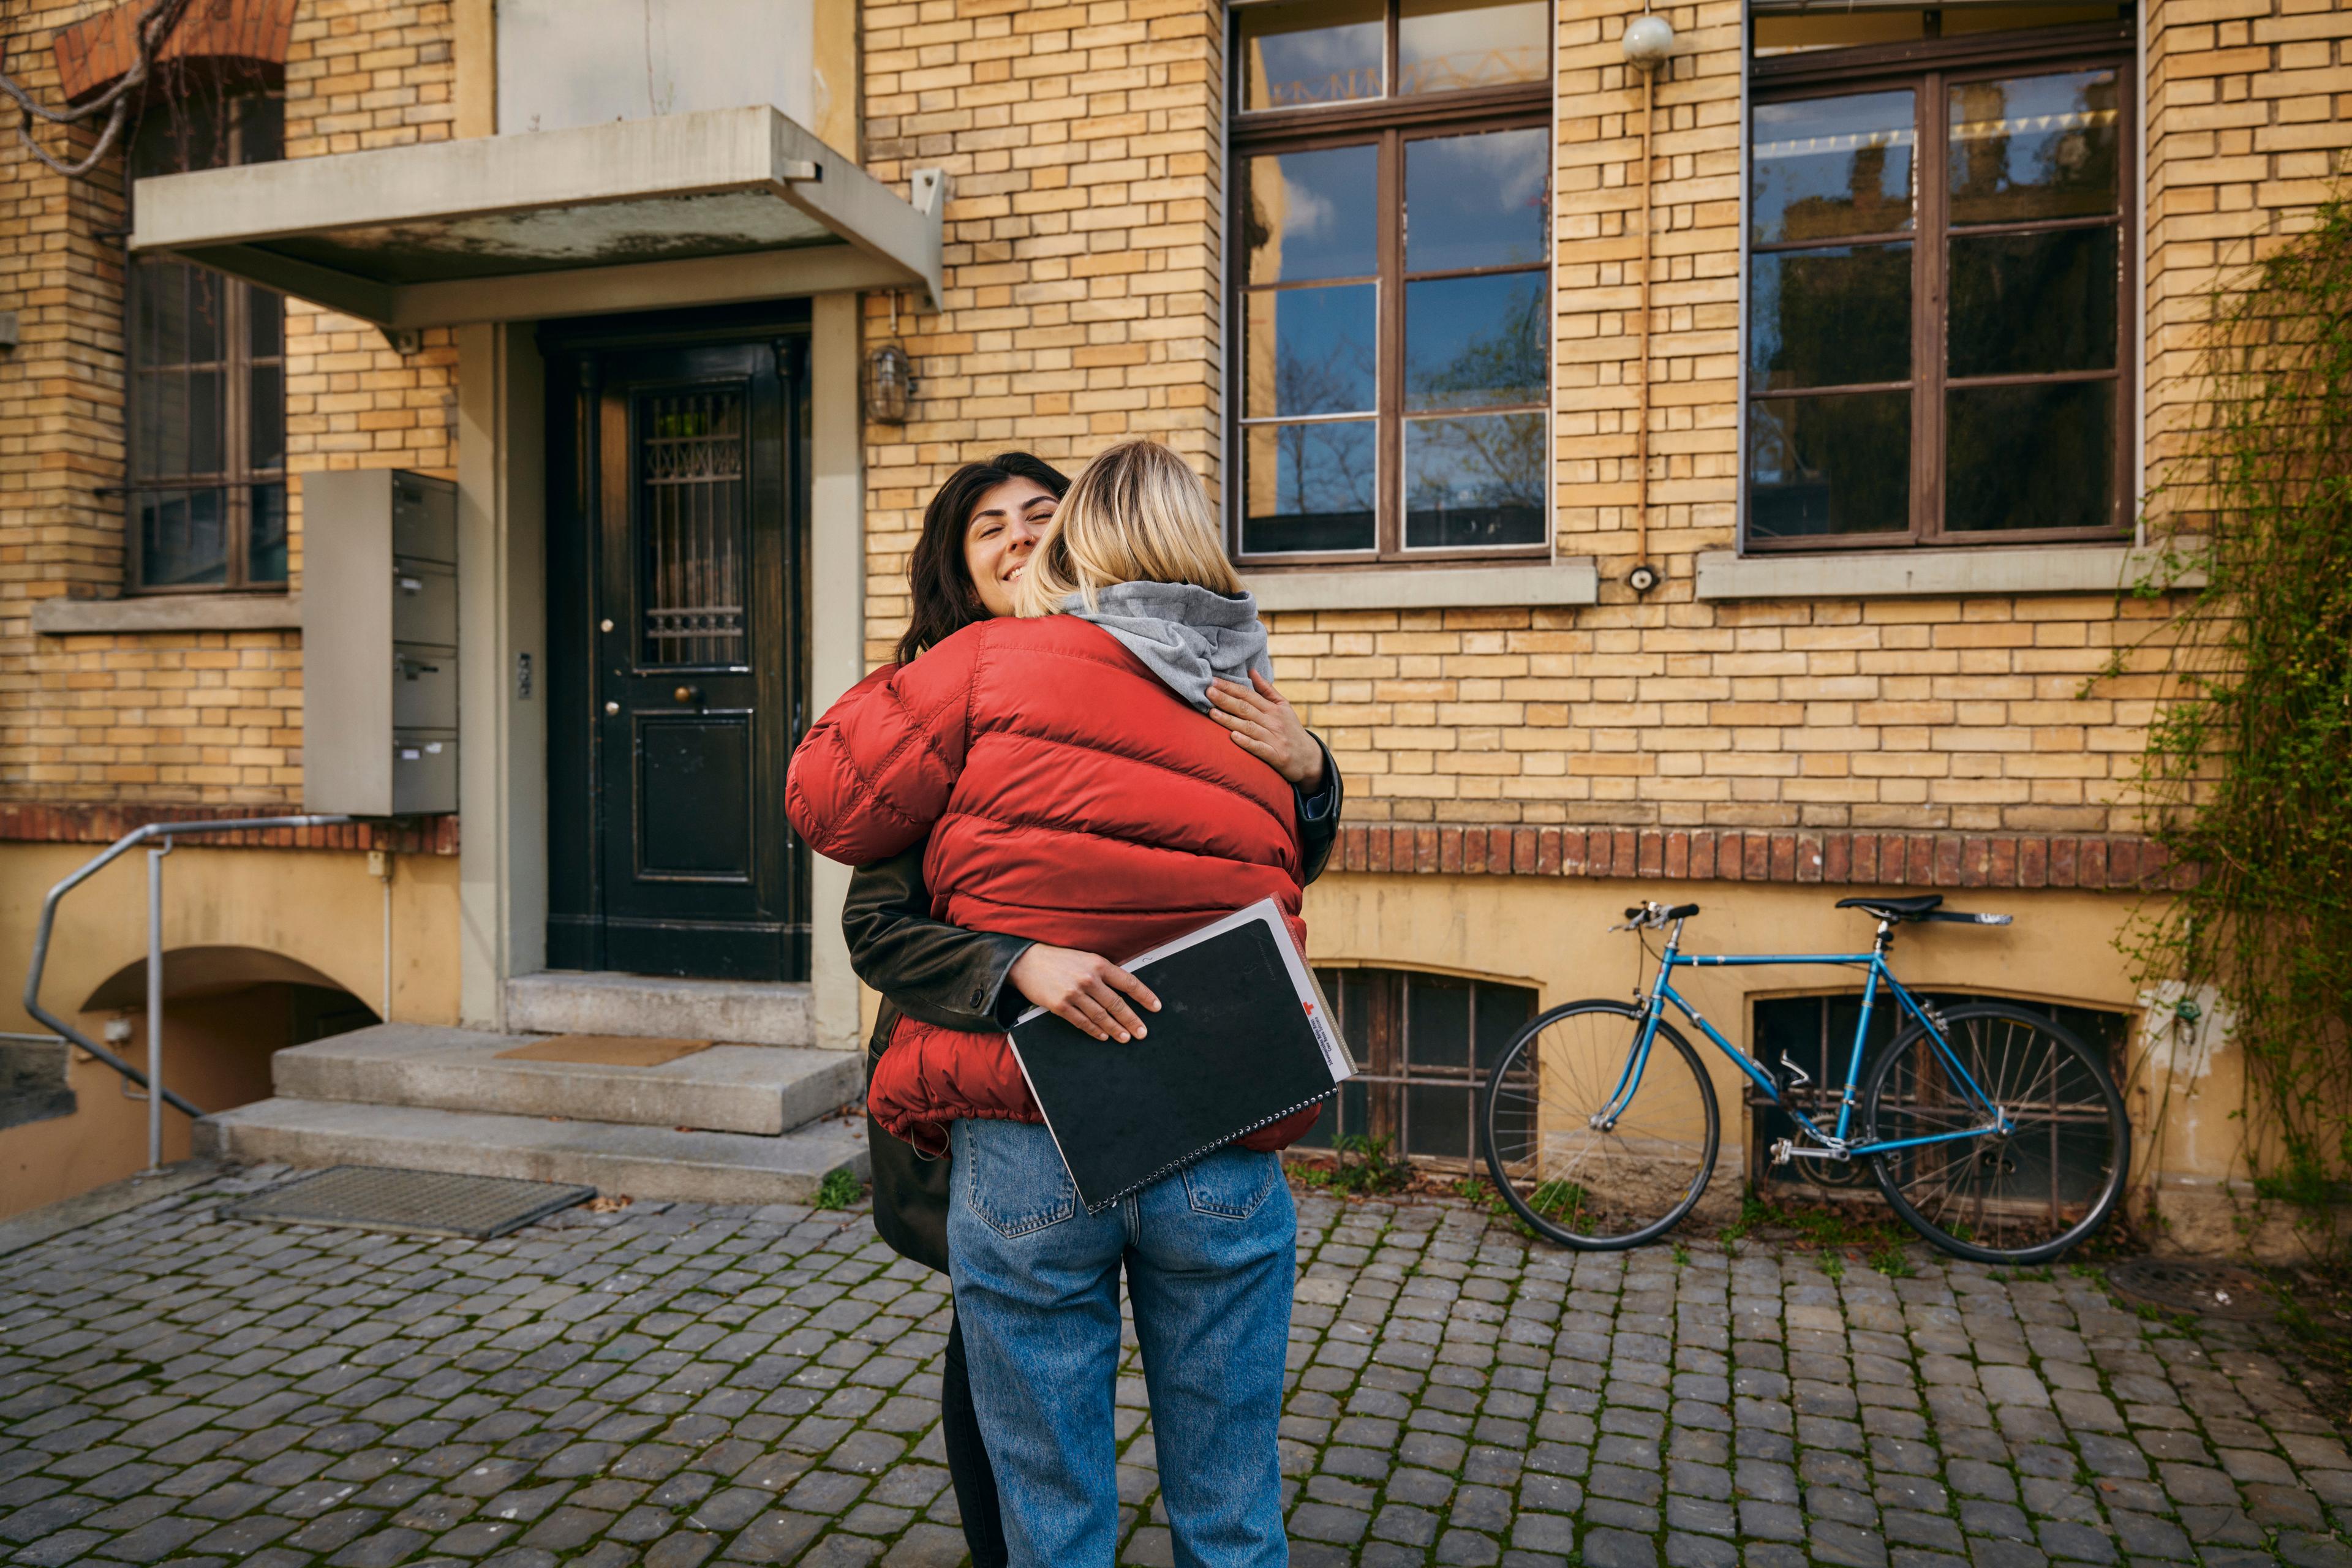 Eine Frau in roter Jacke mit dem Rücken zur betrachtenden Person umarmt eine lachende Frau, welche Dokumente in den Händen hält und die Umarmung erwidert. Die beiden stehen vor einem Hauseingang.